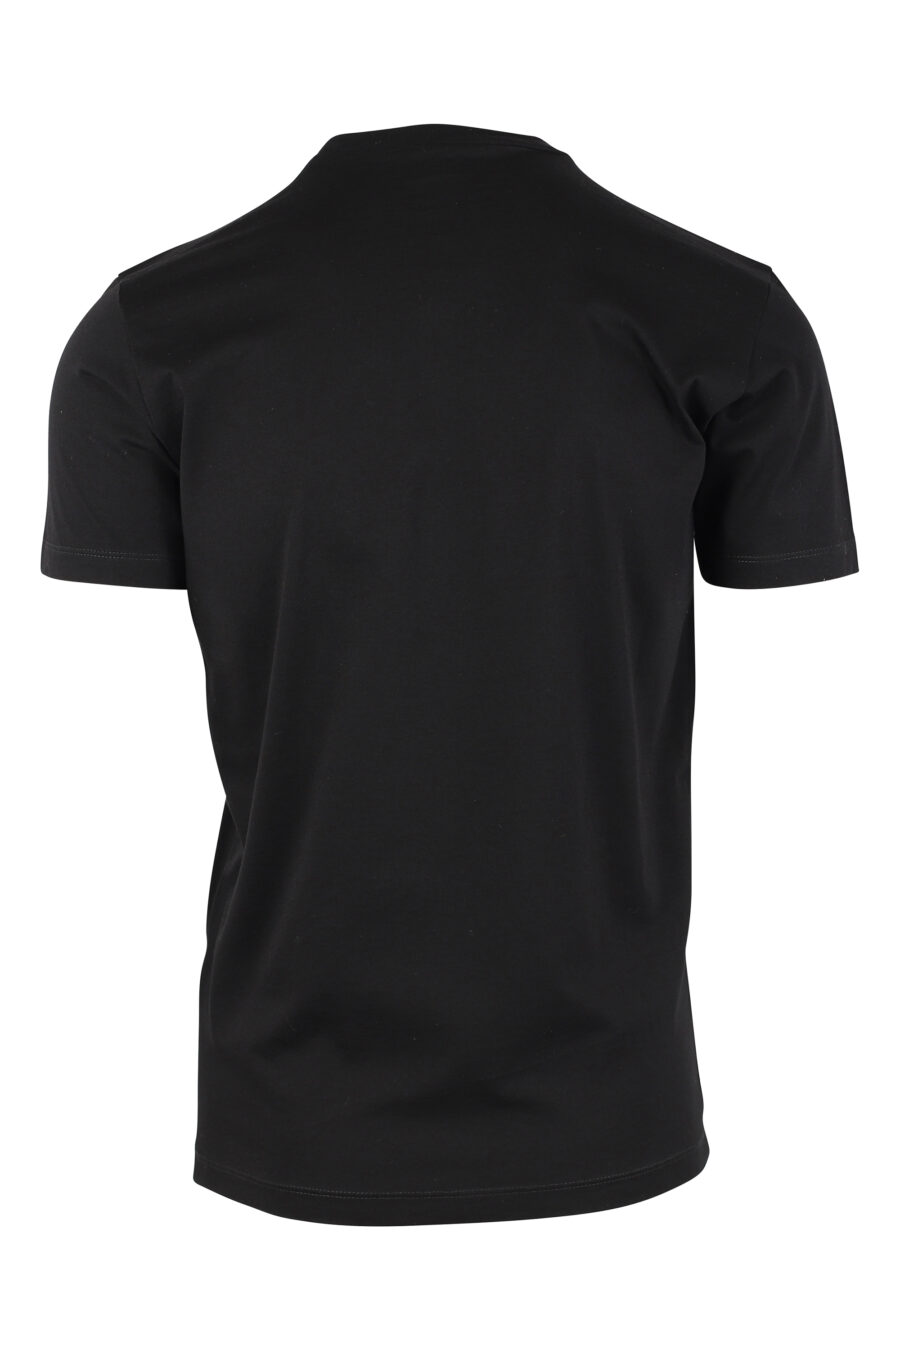 T-Shirt schwarz mit Doppellogo "icon" fluoreszierend gelb - IMG 9764